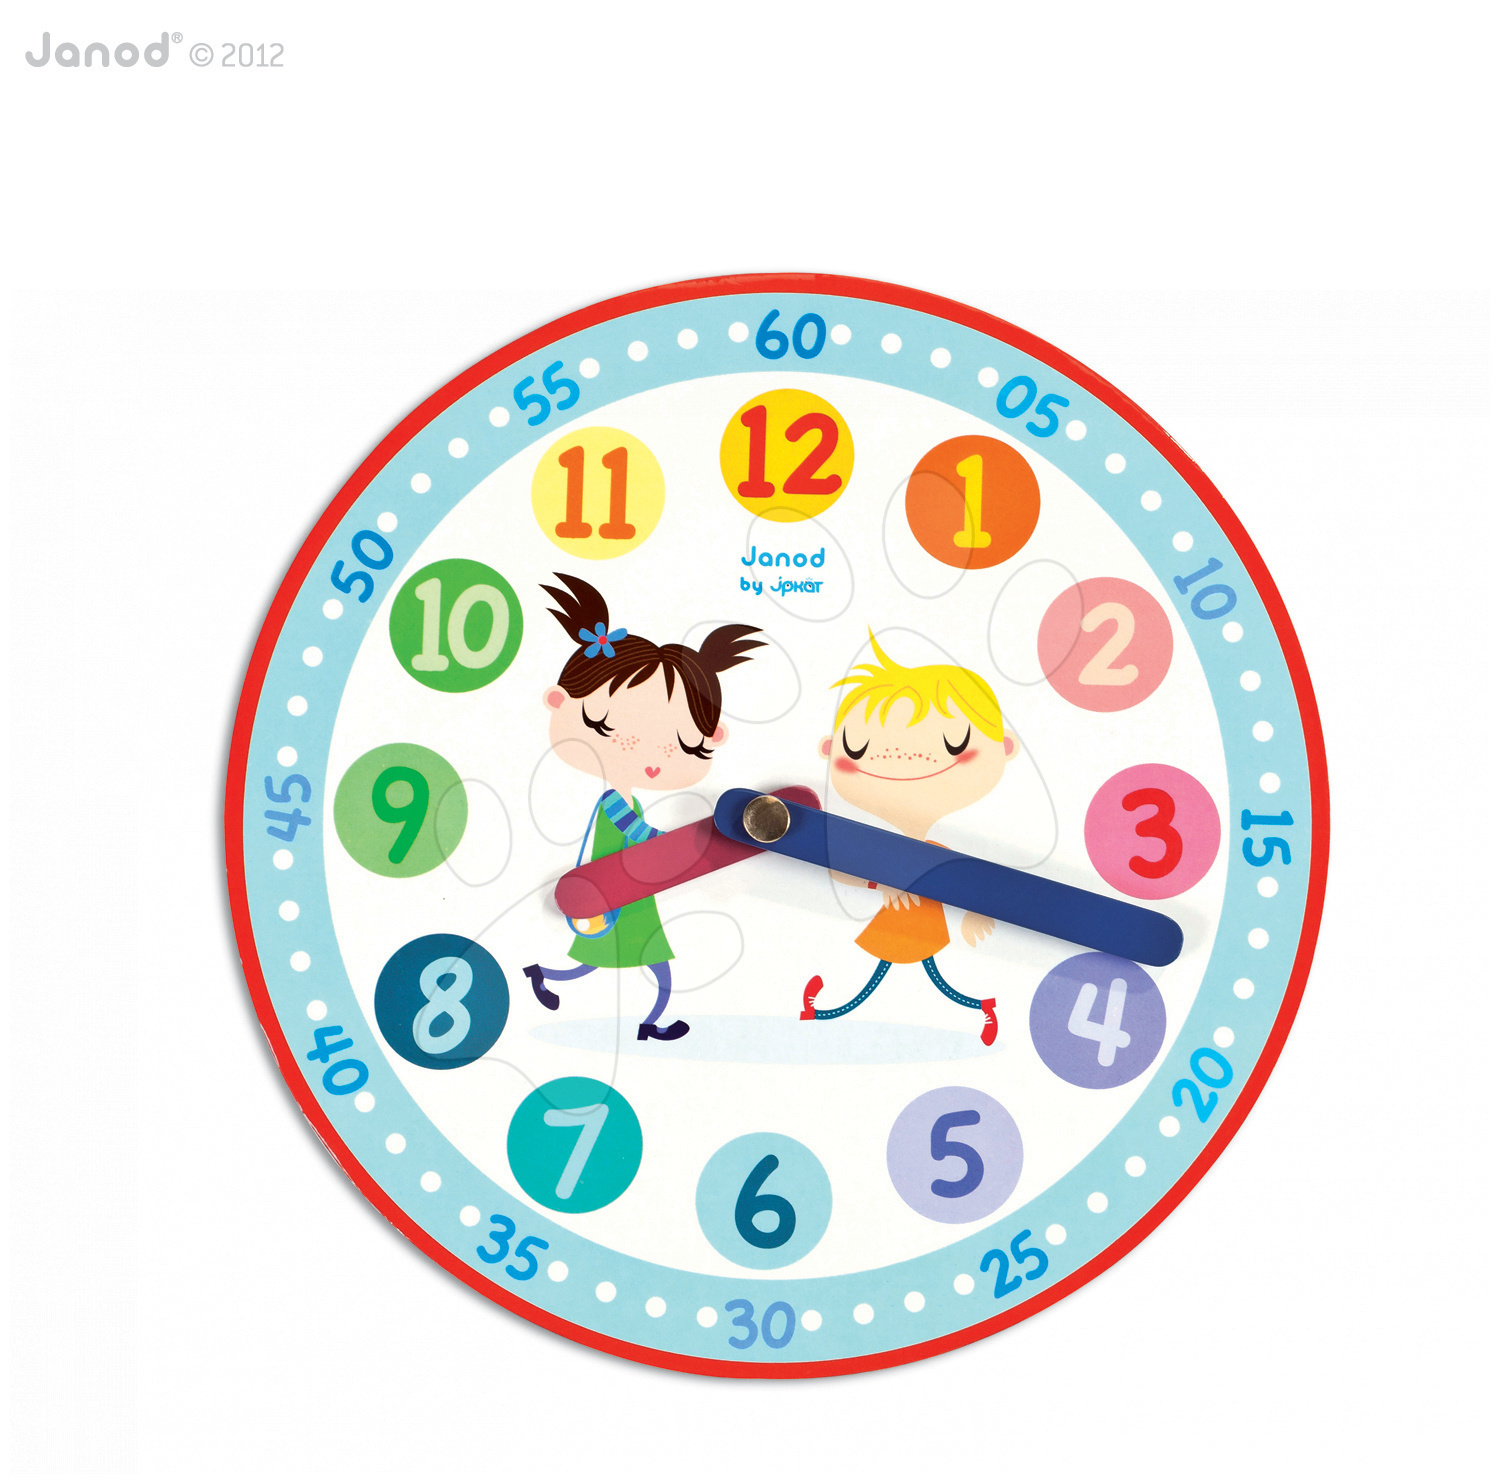 Cudzojazyčné spoločenské hry - Spoločenská hra Tic-Tac Janod v angličtine od 4 rokov